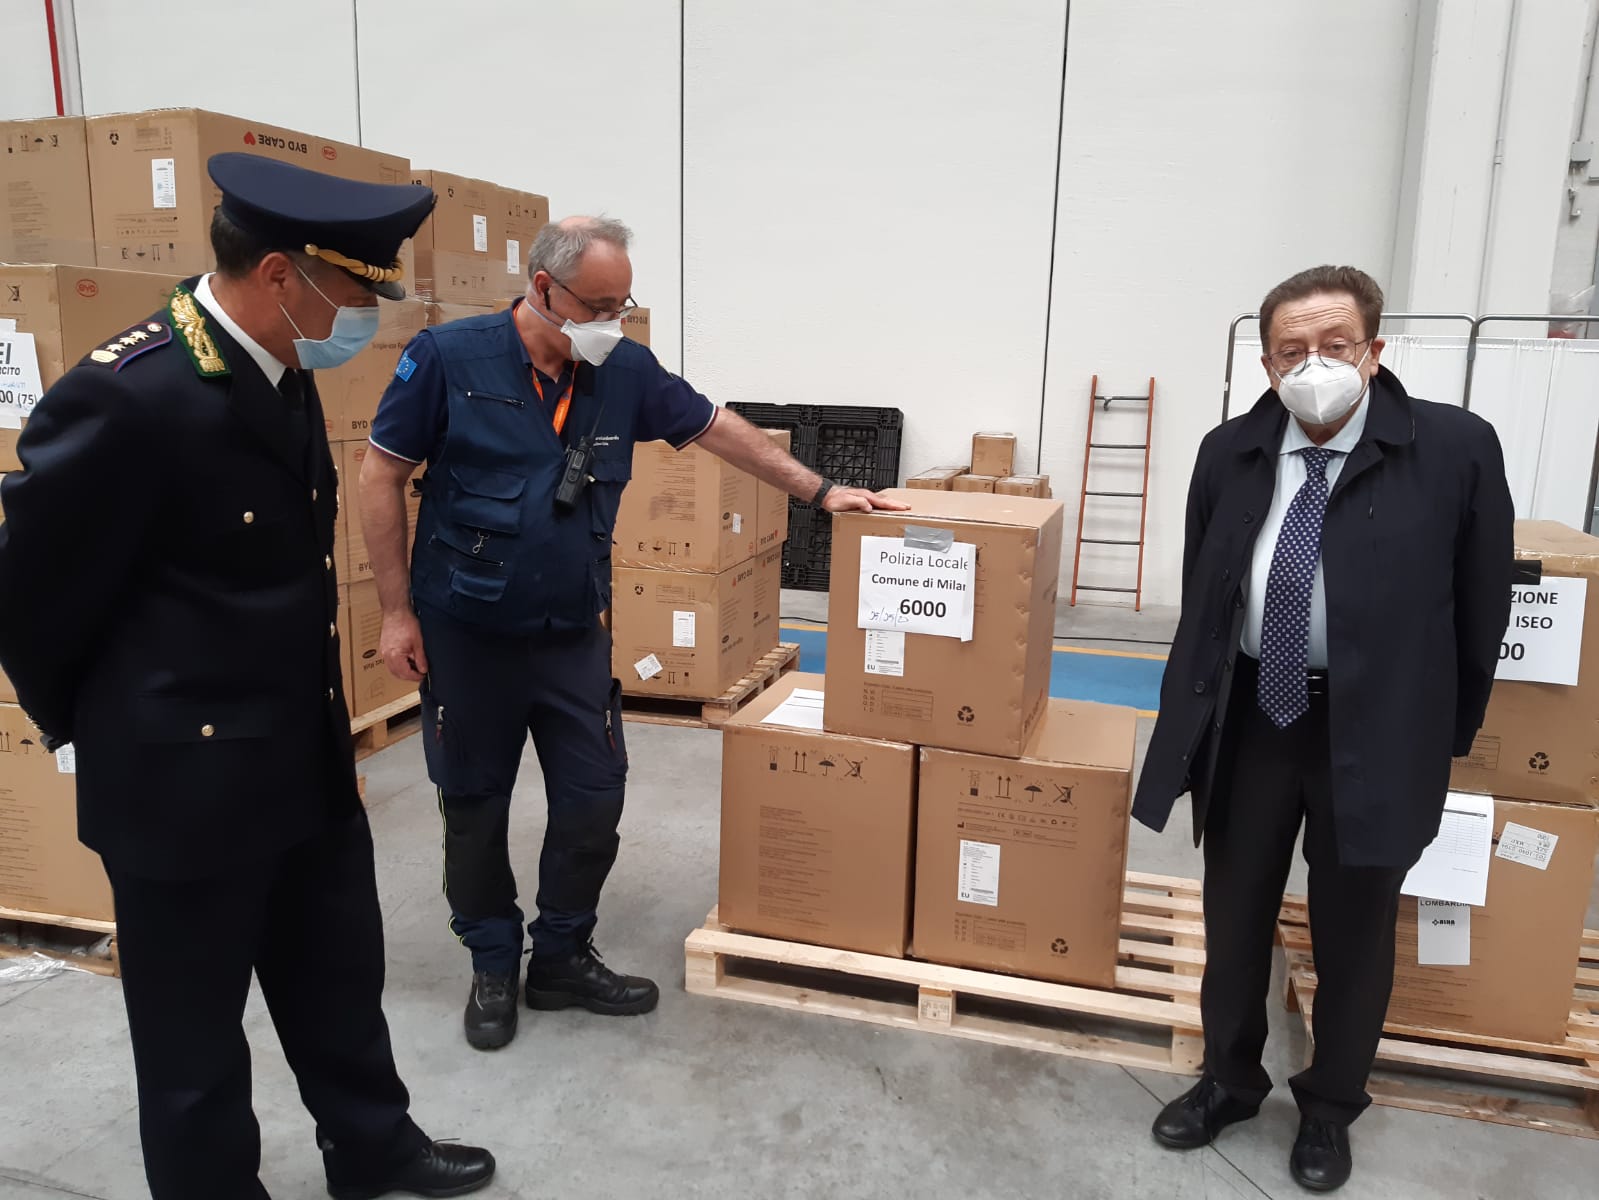 Coronavirus, De Corato consegna mascherine a Polizia locale di Milano